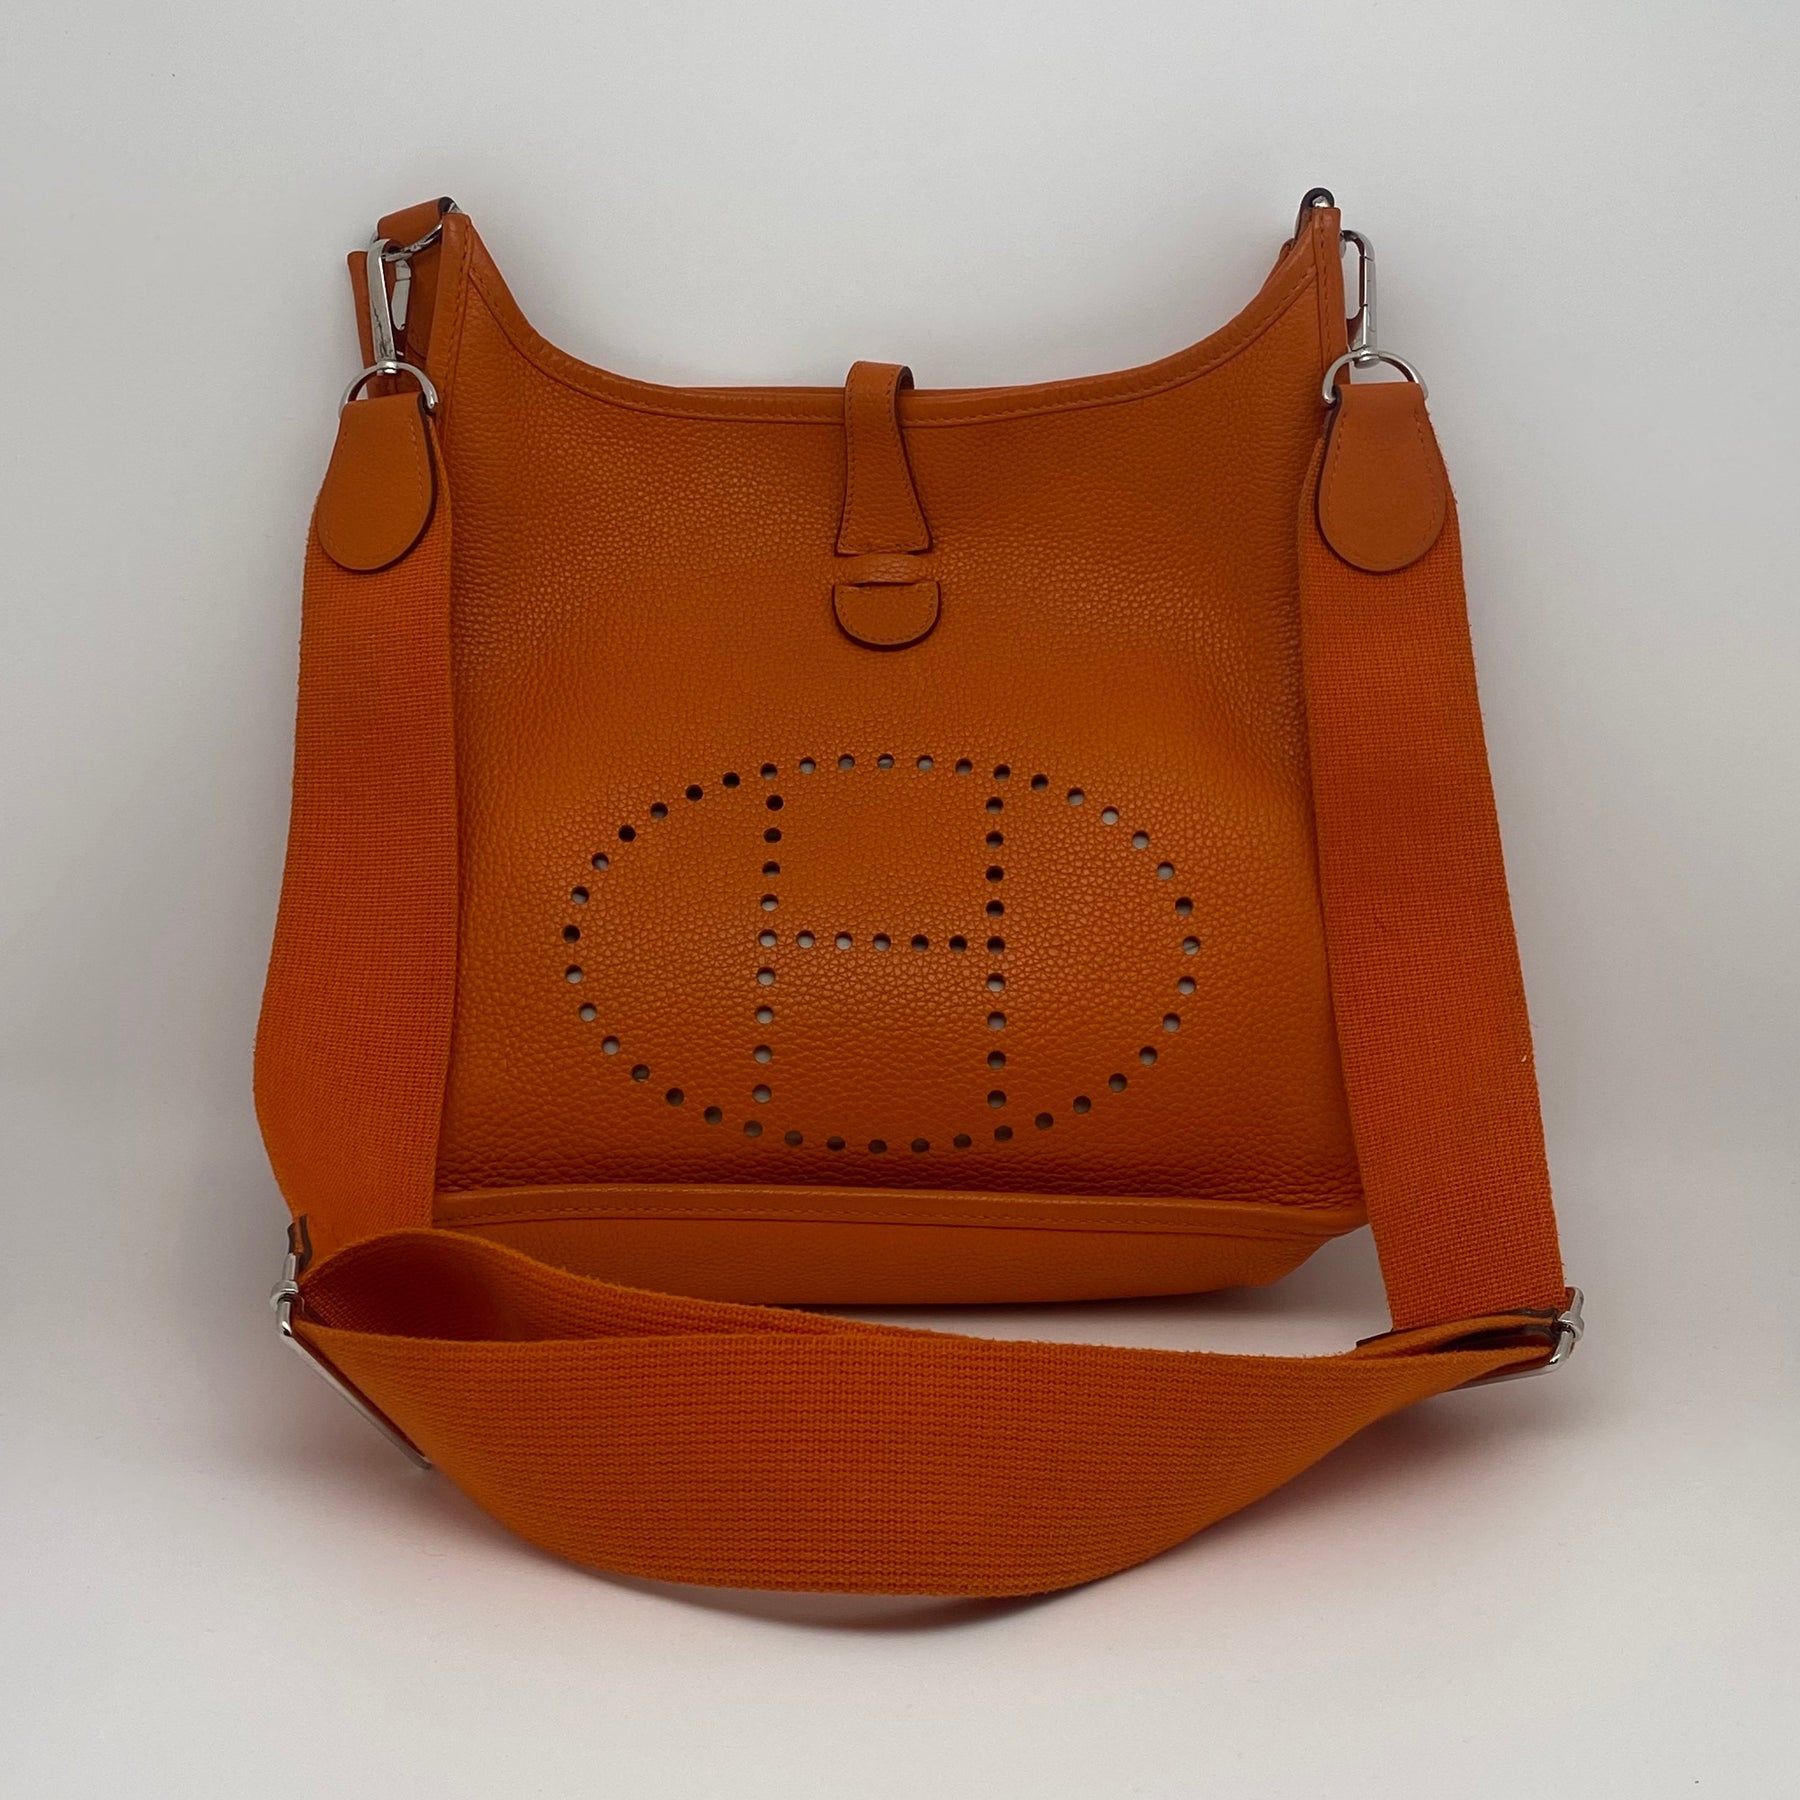 Hermès Evelyne III Generation Clemence PM Front Perforated H Logo Orange Leather Palladium Hardware Adjustable Detachable Single Strap